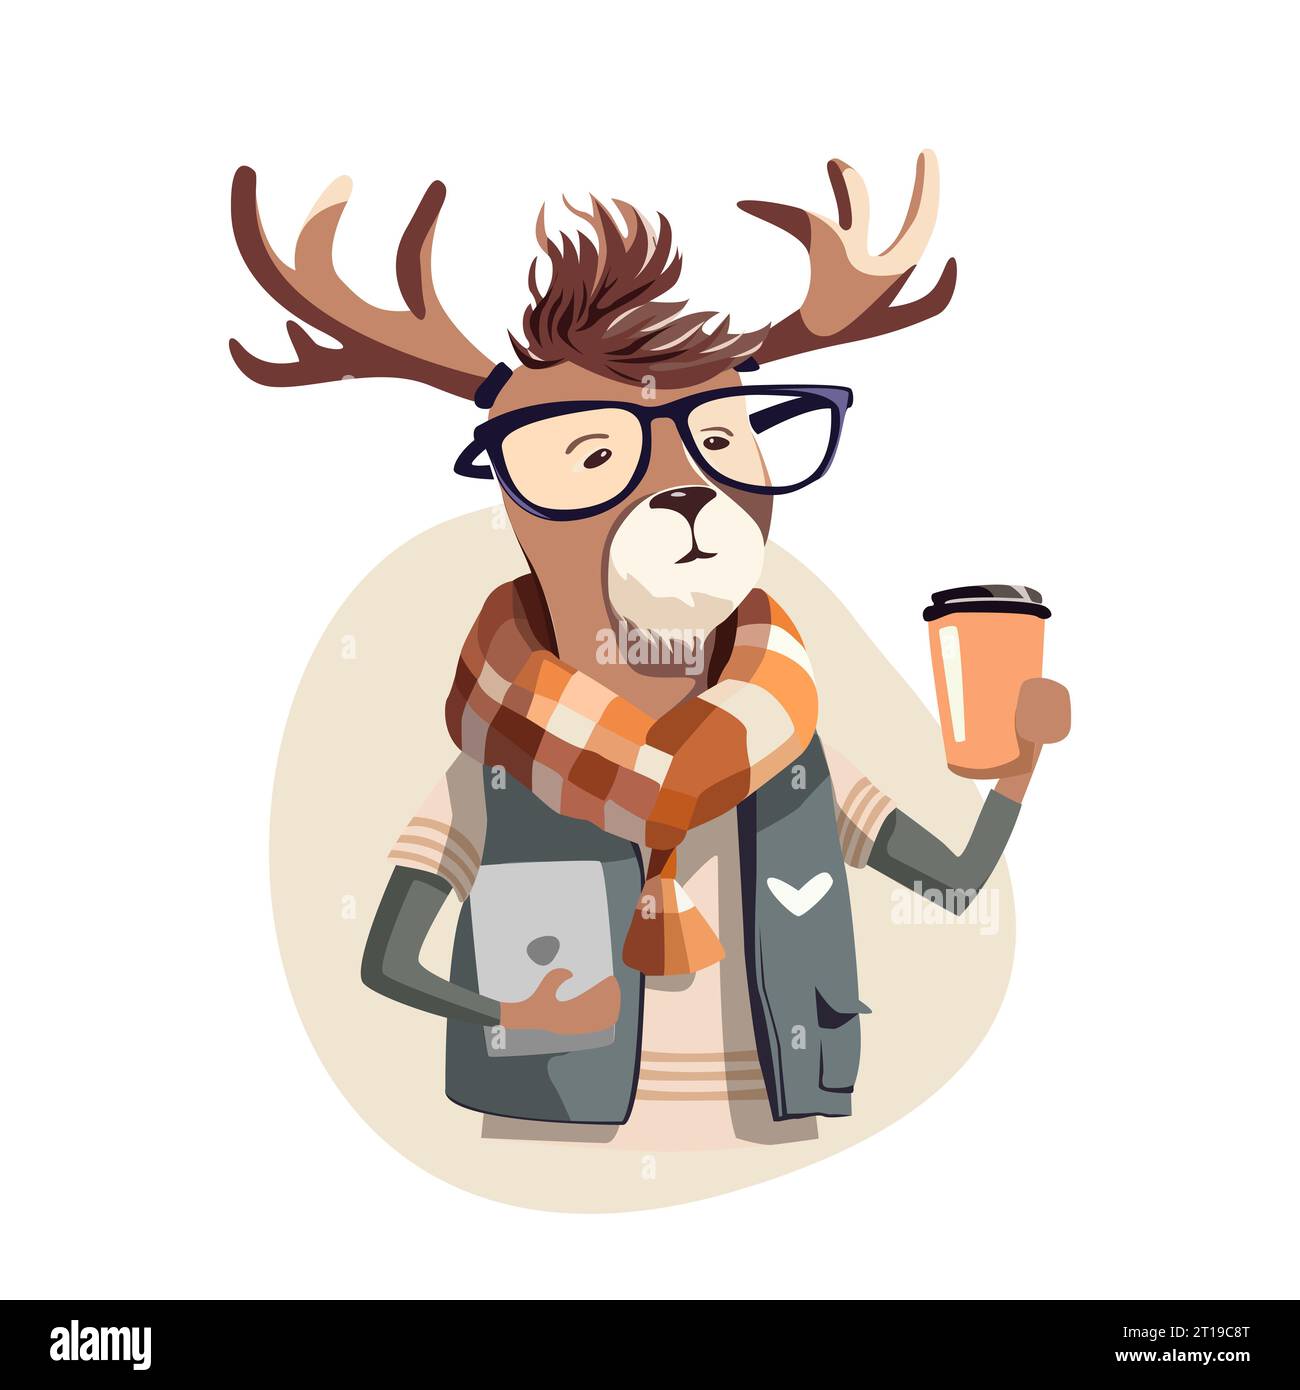 Cervo hipster antropomorfo che tiene in mano il caffè. Illustrazione vettoriale con disegno piatto isolata su sfondo bianco Illustrazione Vettoriale